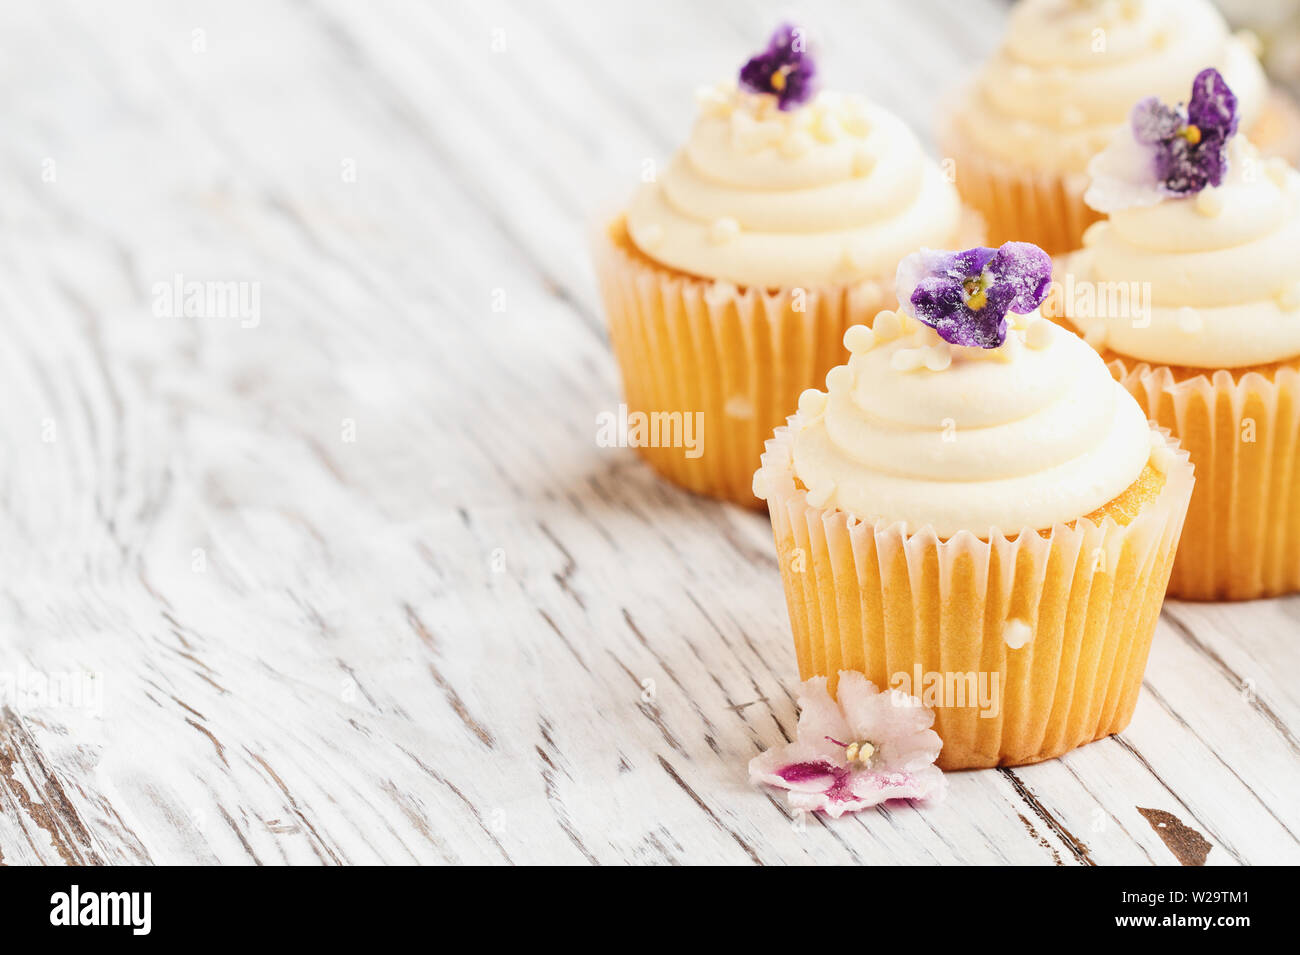 Belle vanilla cupcakes avec glaçage buttercream décoré de fleurs violet enrobé. Focus sélectif avec arrière-plan flou. Banque D'Images